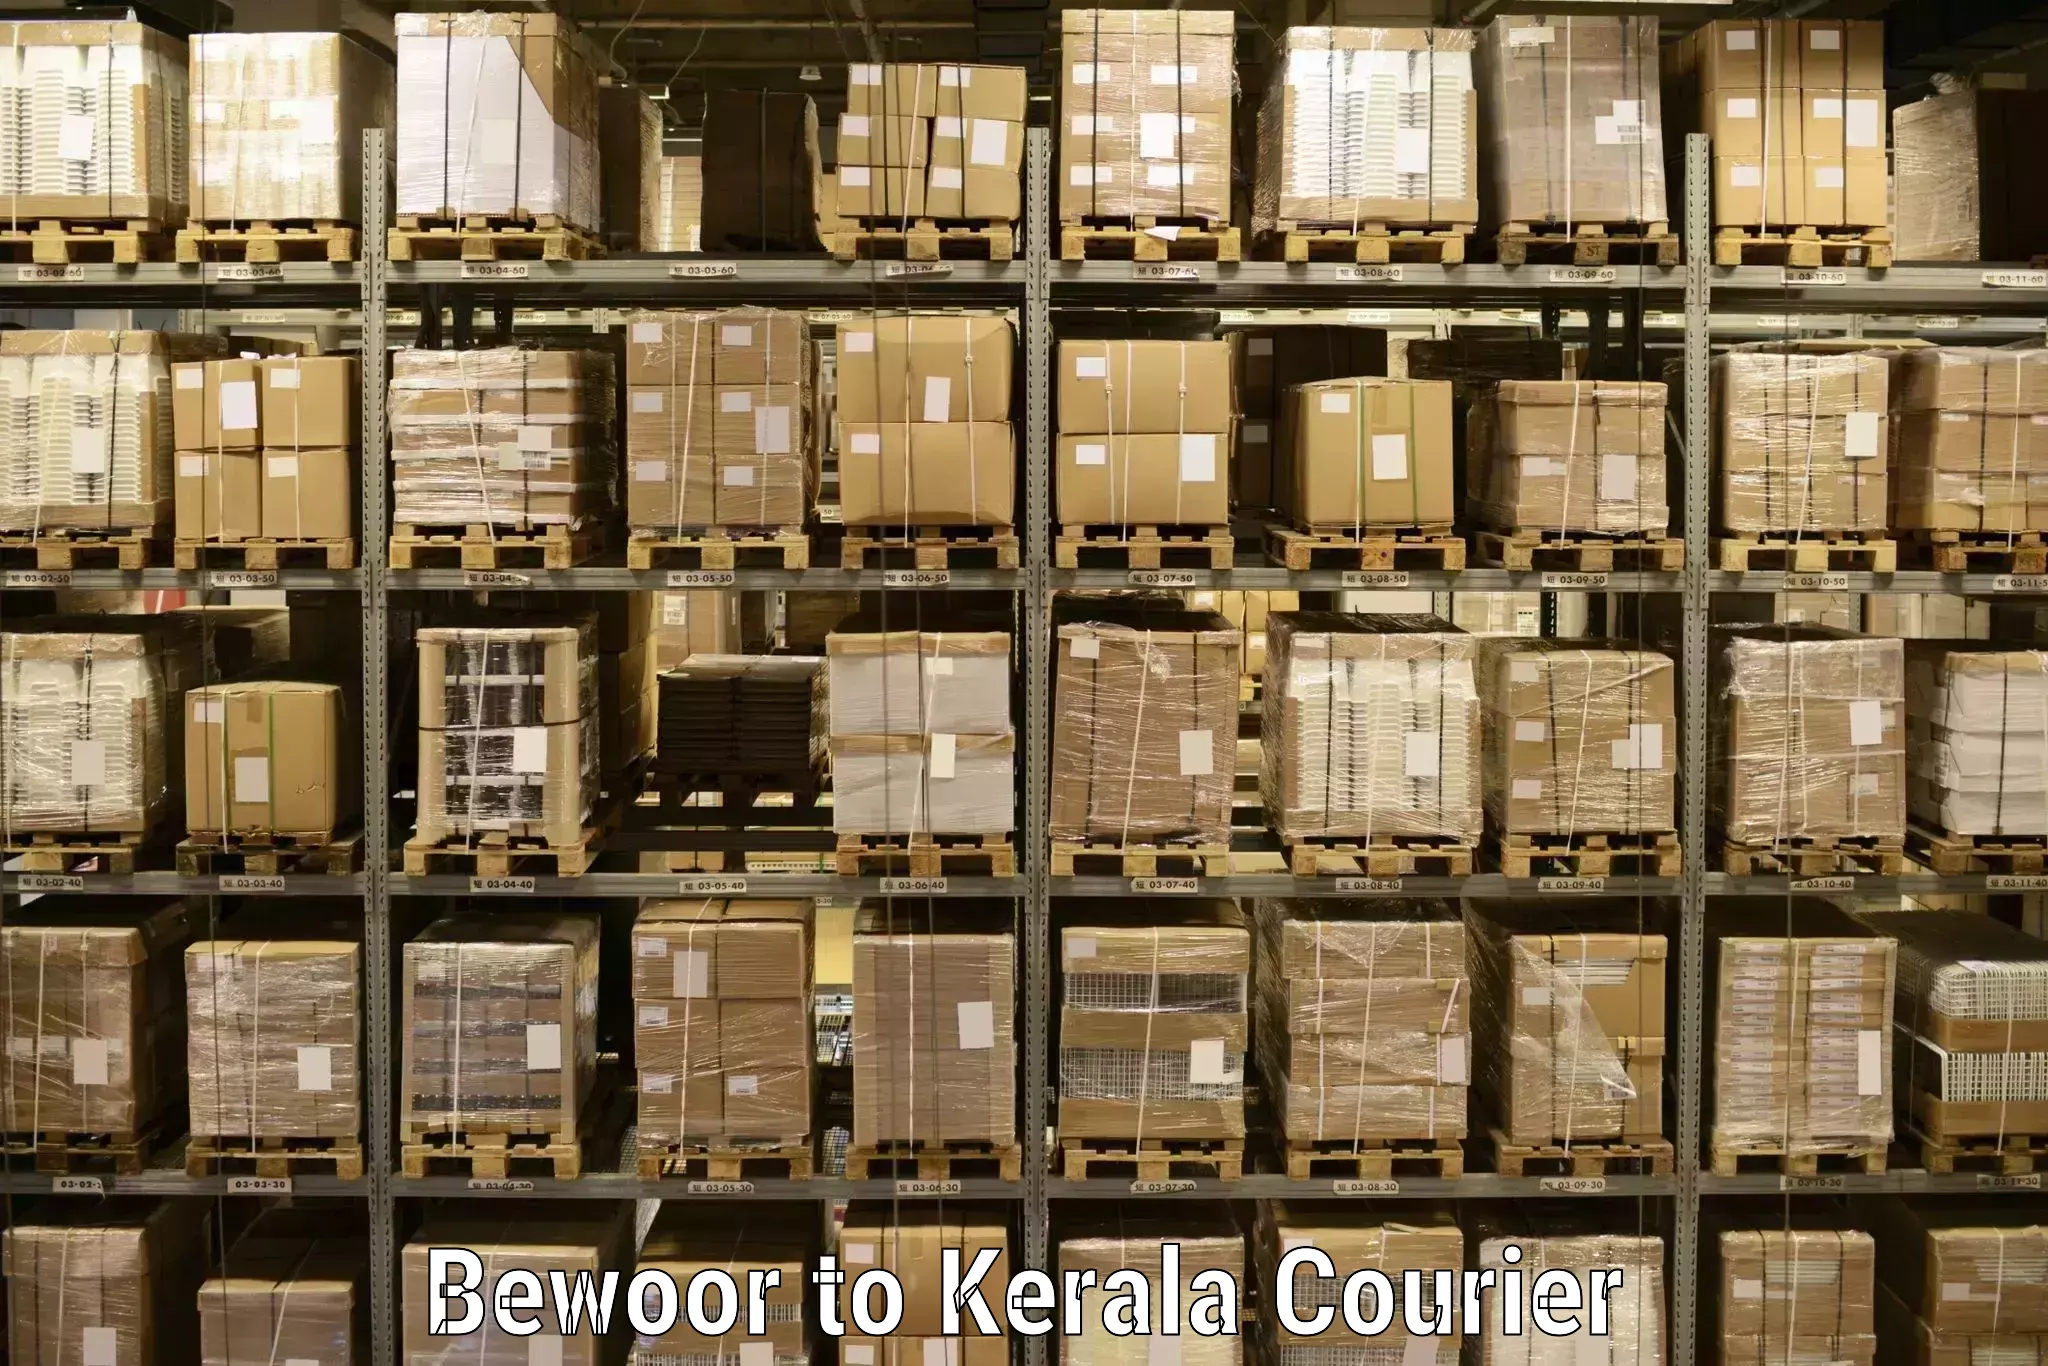 Courier services Bewoor to Karunagappally